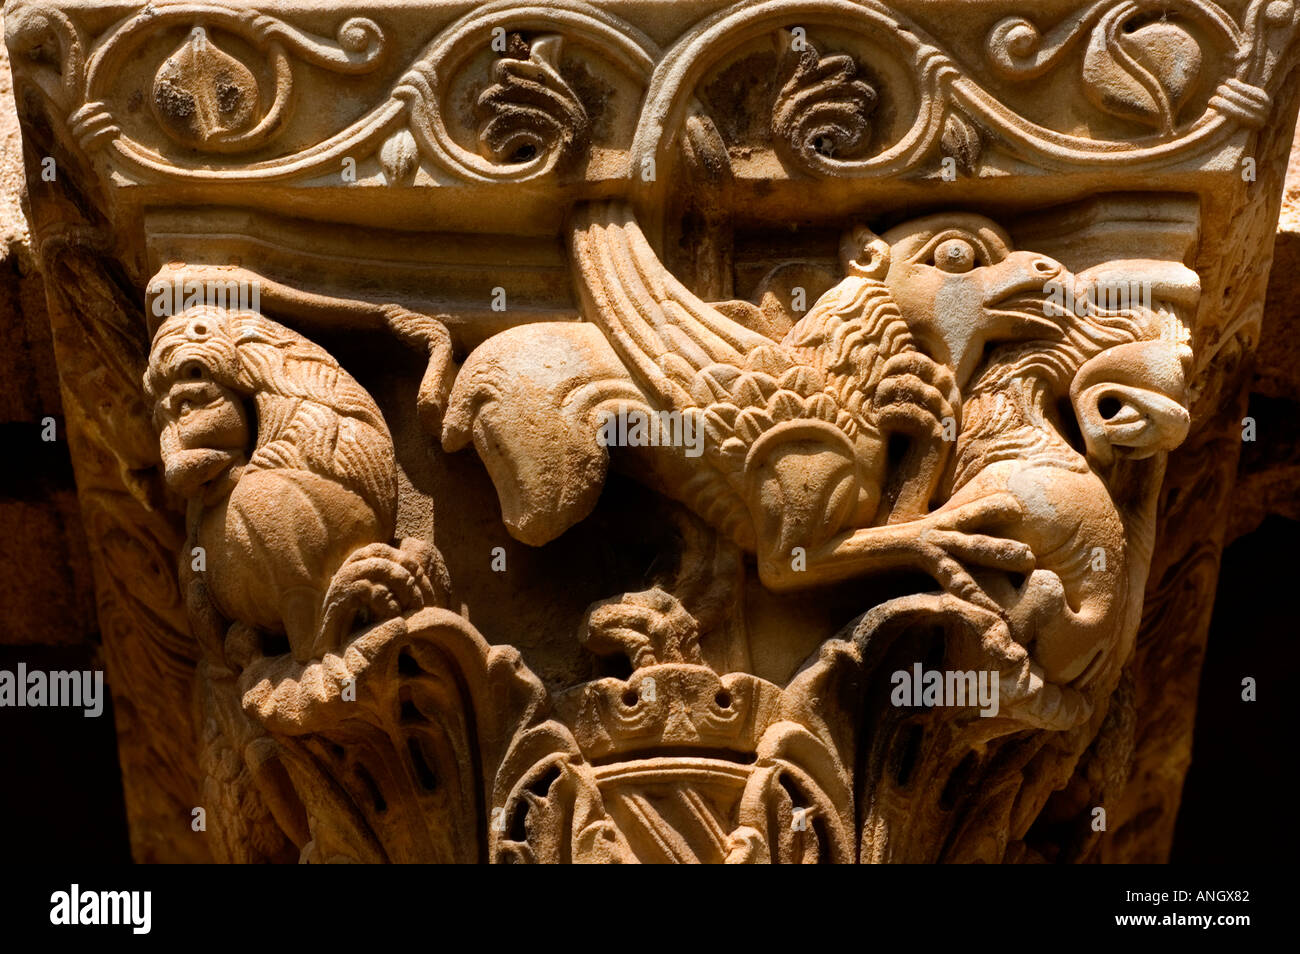 Cattedrale di Monreale, Cattedrale di Santa Maria Nuova di Monreale, Palermo, Sicilia, Grande esempio di architettura normanna, mosaici bizantini Foto Stock